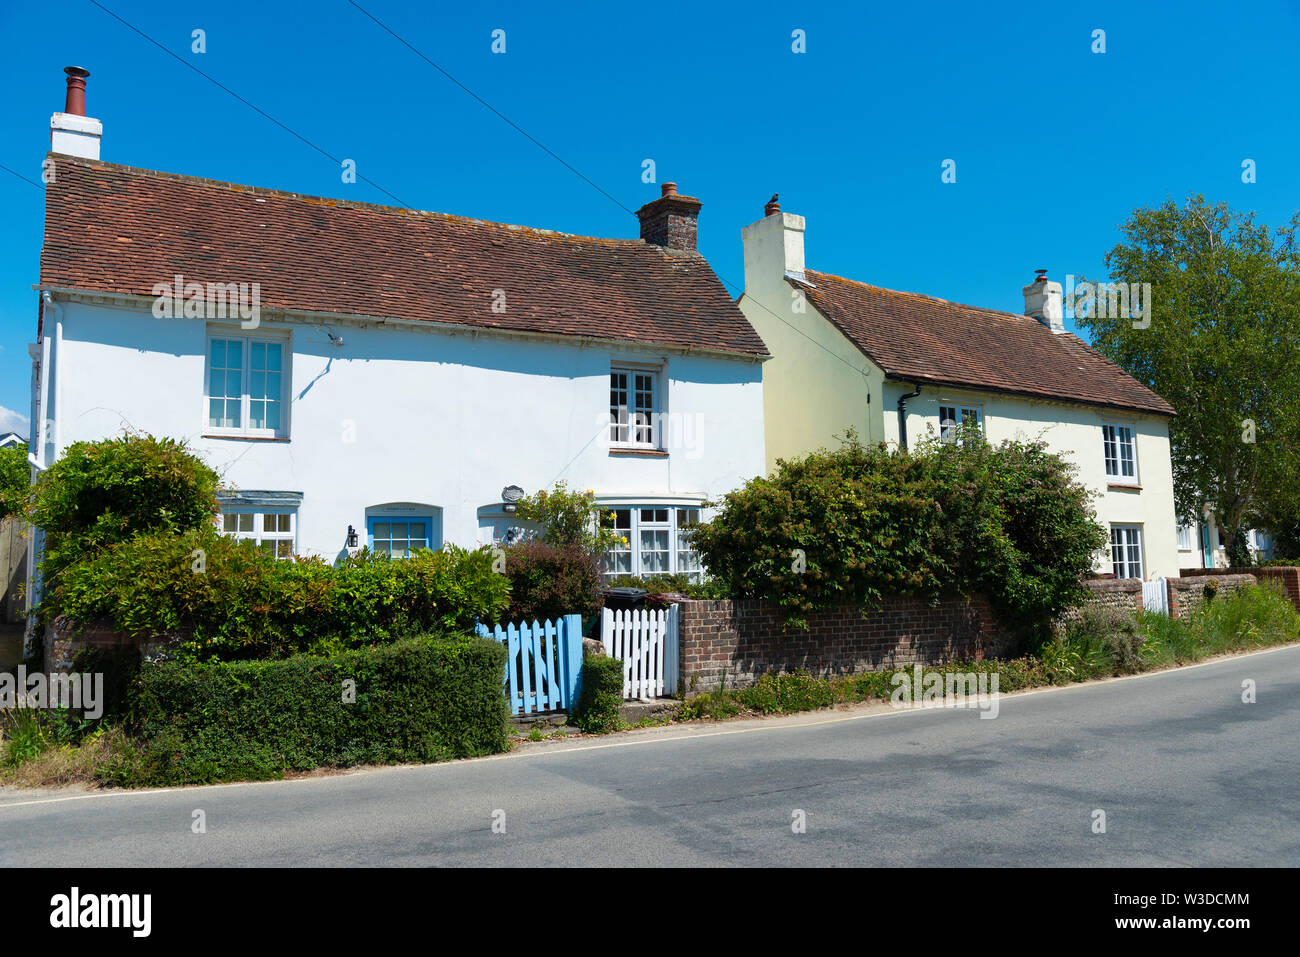 Periodo di graziosi cottage su un giorno d'estate nel villaggio sul mare di West Wittering, Nr. Chichester, West Sussex, in Inghilterra, Regno Unito Foto Stock